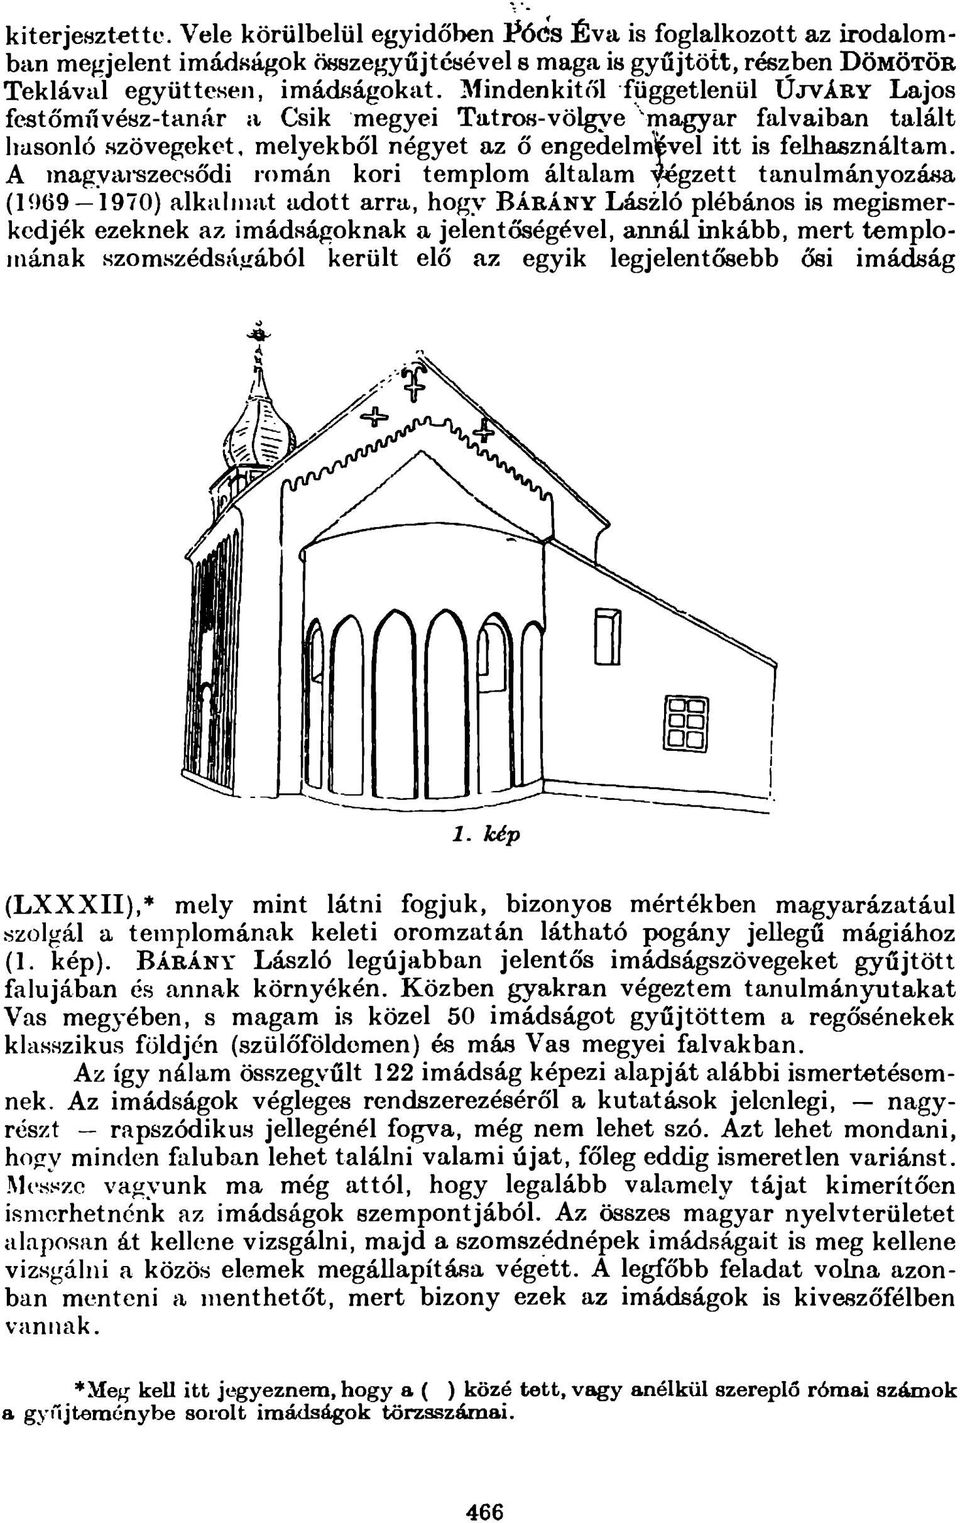 A inagyai-szecsődi román kori templom általam w gzett tanulmányozása (1069 1970) alkuimat adott arra, hogy B á r á n y László plébános is megismerkedjék ezeknek az imádságoknak a jelentőségével,